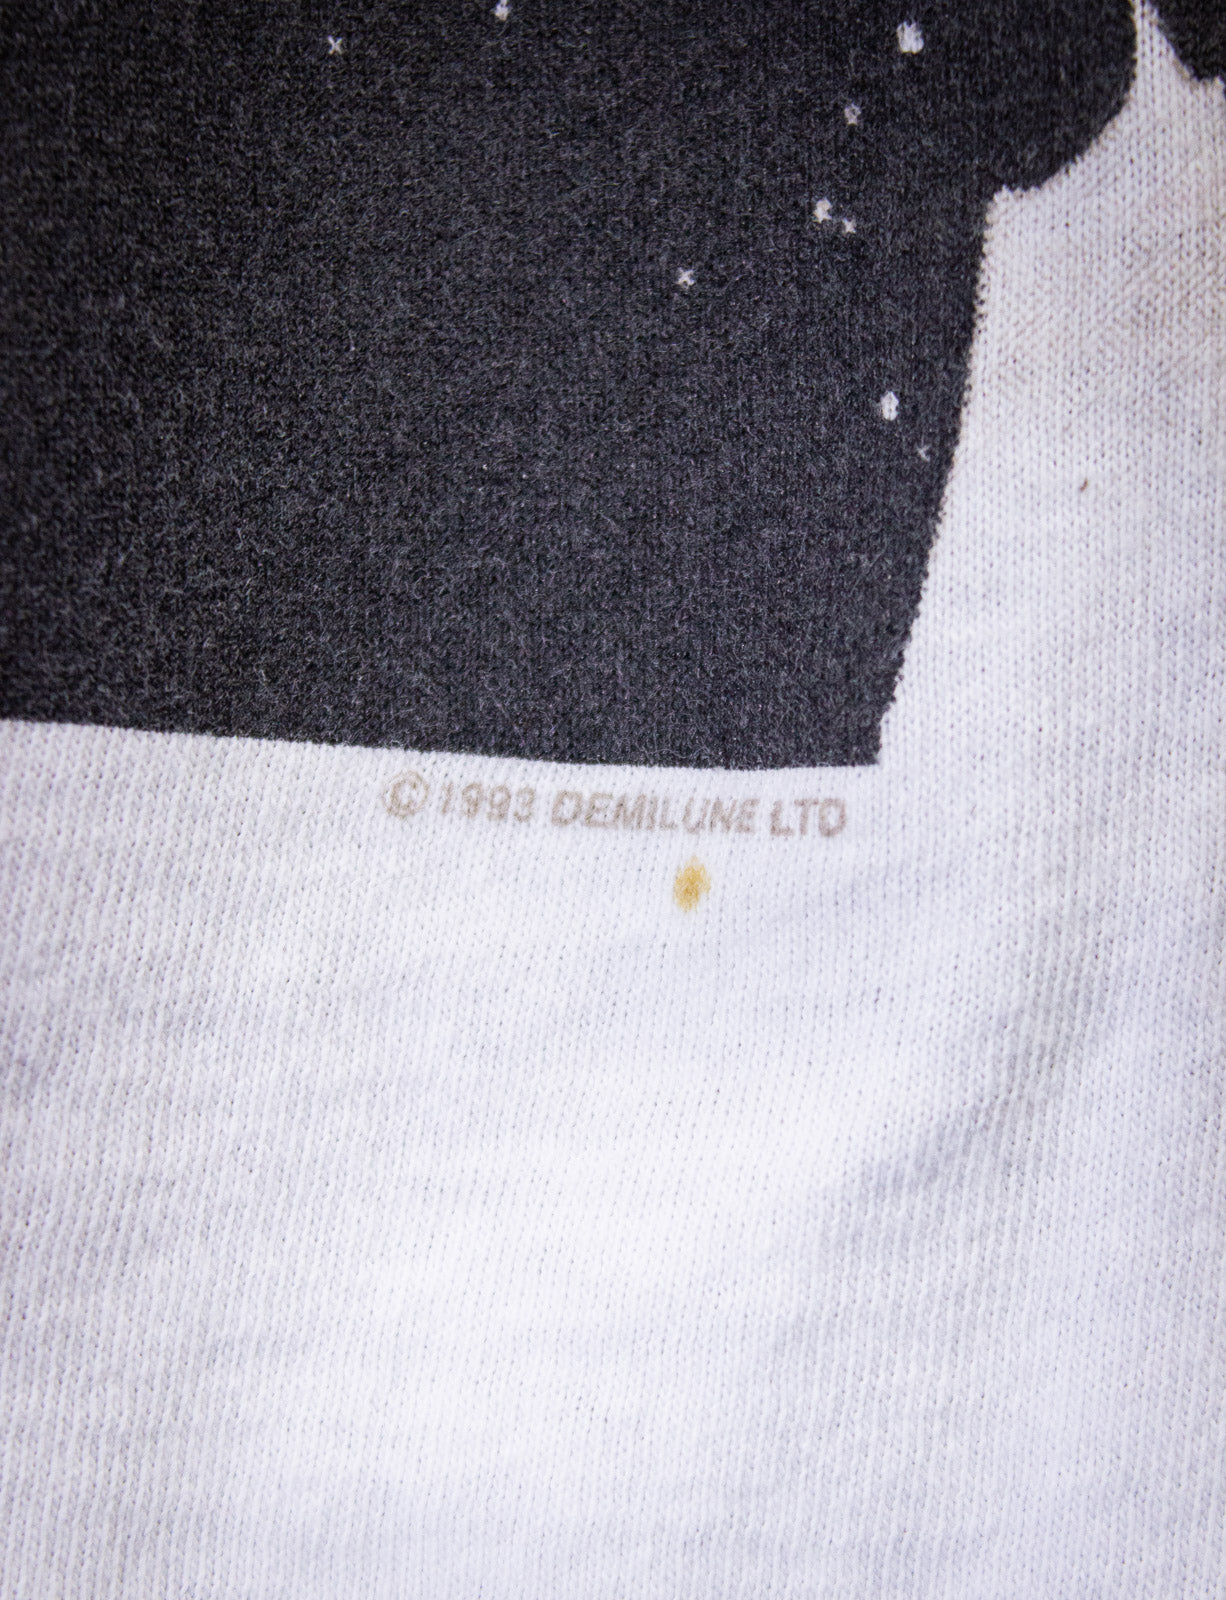 Vintage Depeche Mode Devotional Concert T Shirt 1993 White Large